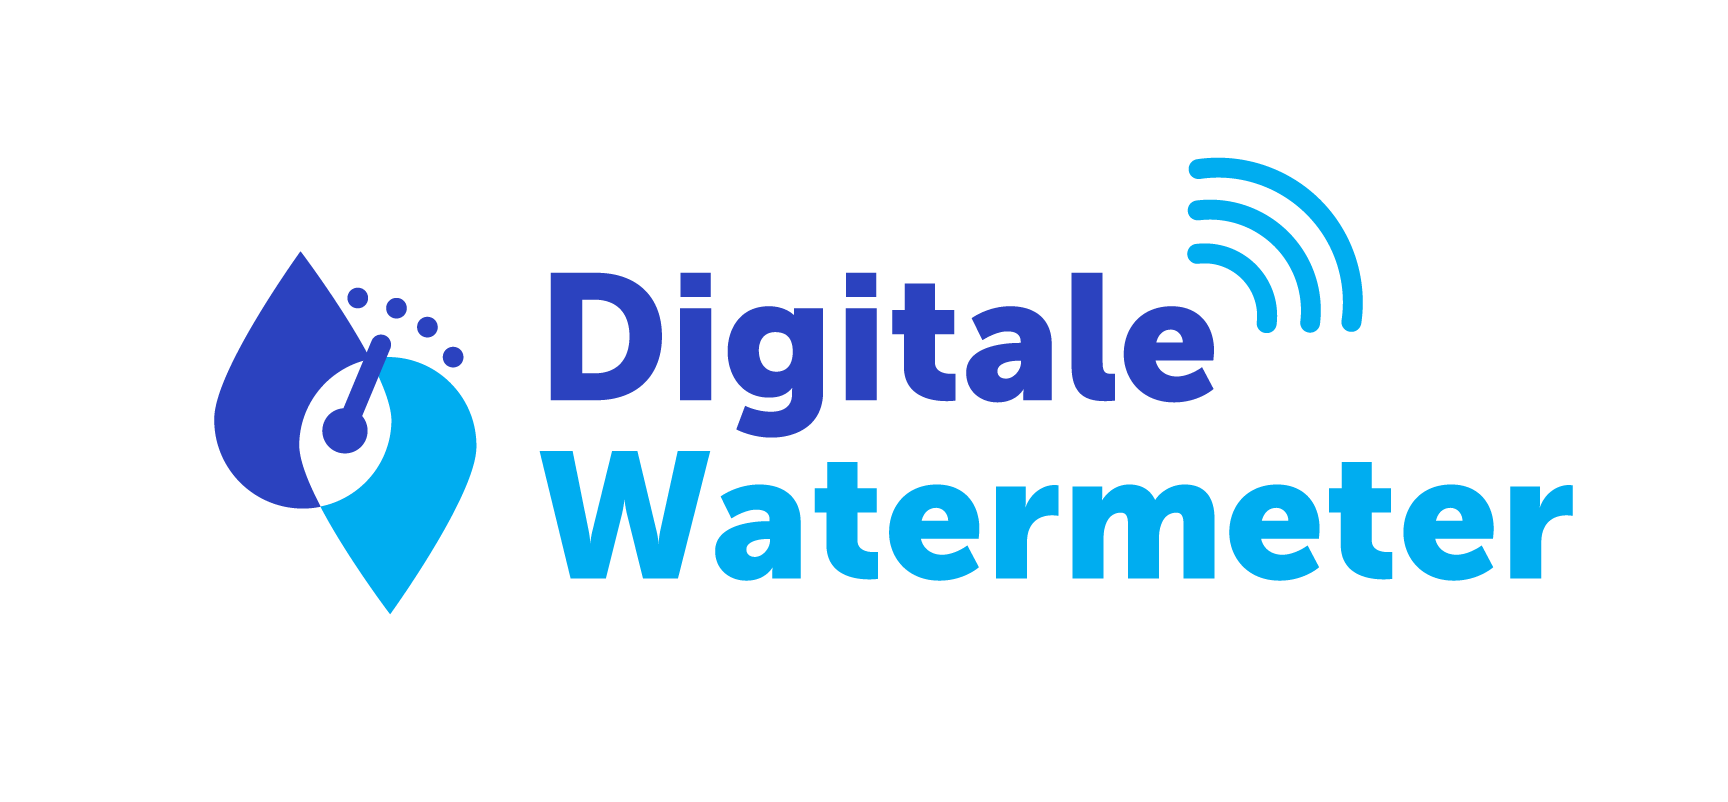 Digitale Watermeter